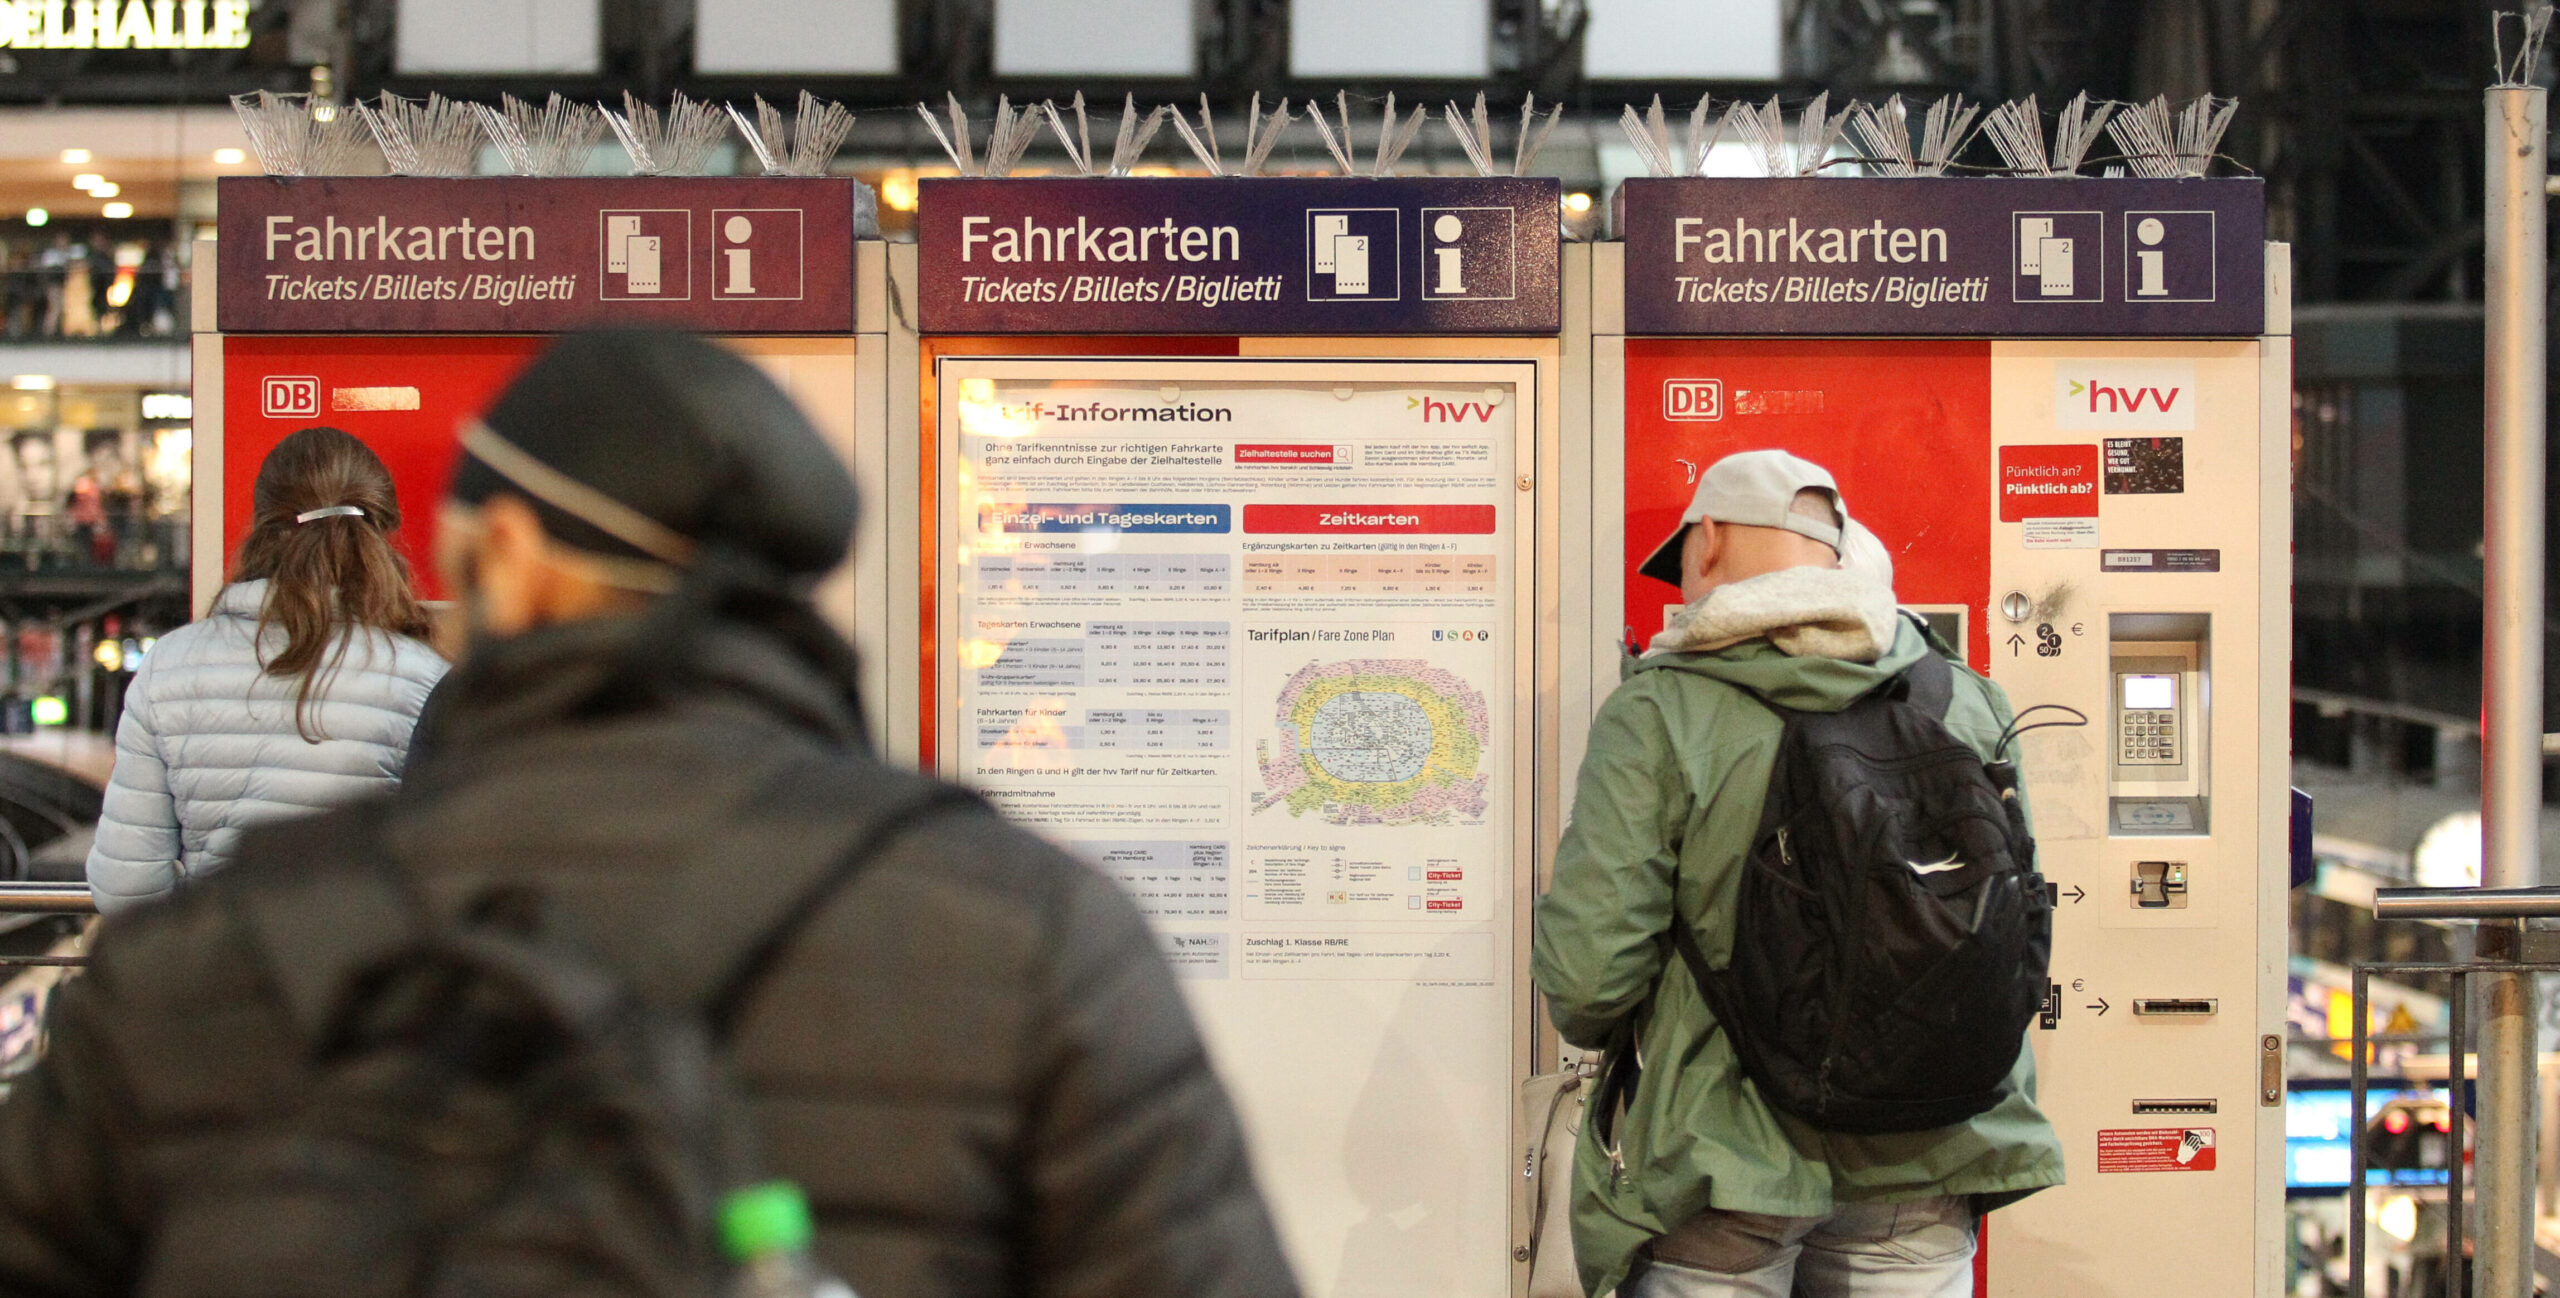 Passanten stehen vor Fahrkartenautomaten am Hamburger Hauptbahnhof. (Symbolbild)